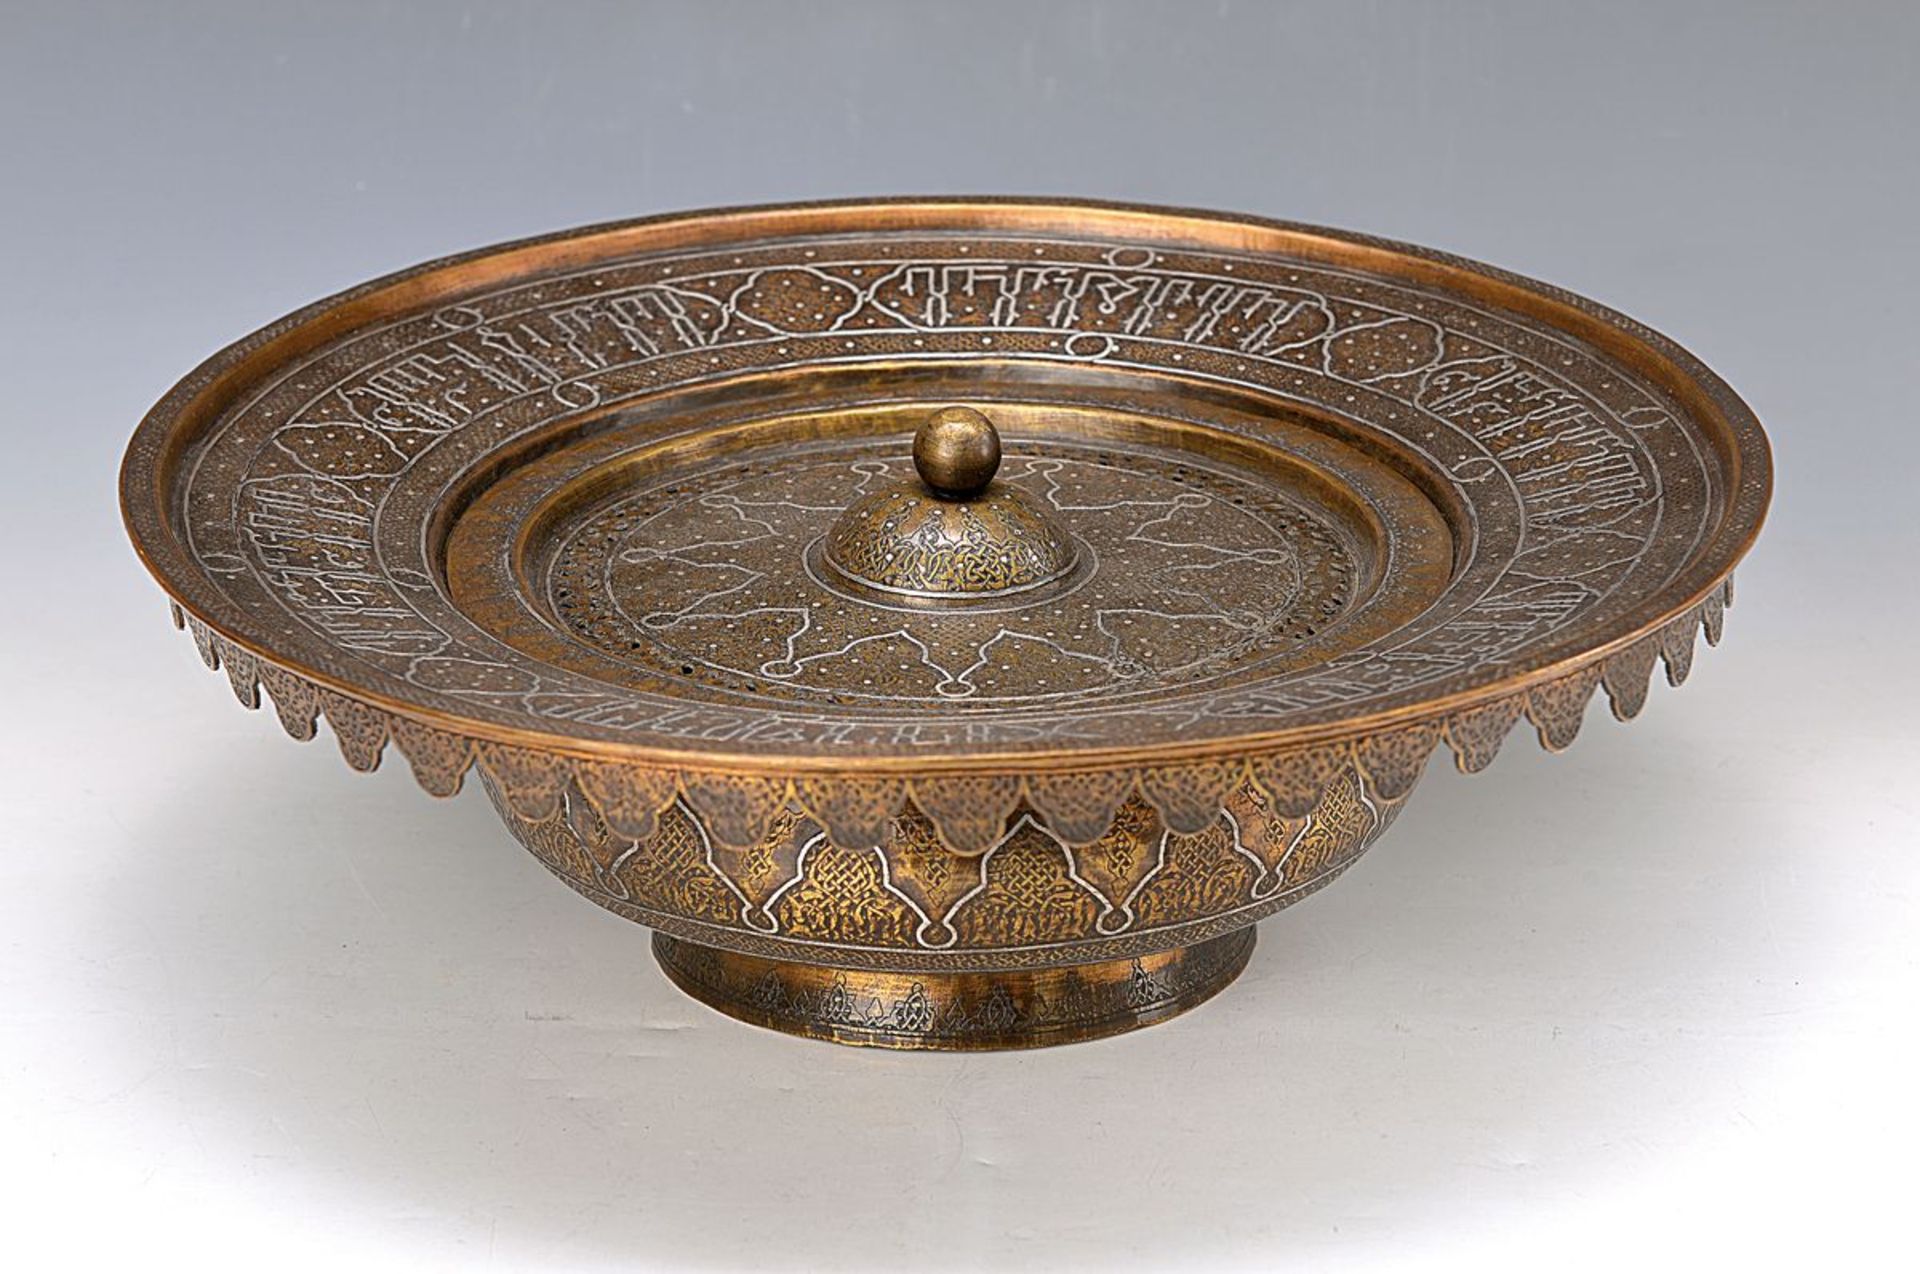 Handwaschbecken, islamisch, Anfang 20. Jh., Bronze, tauschiert, Deckel abnehmbar, aufwendige